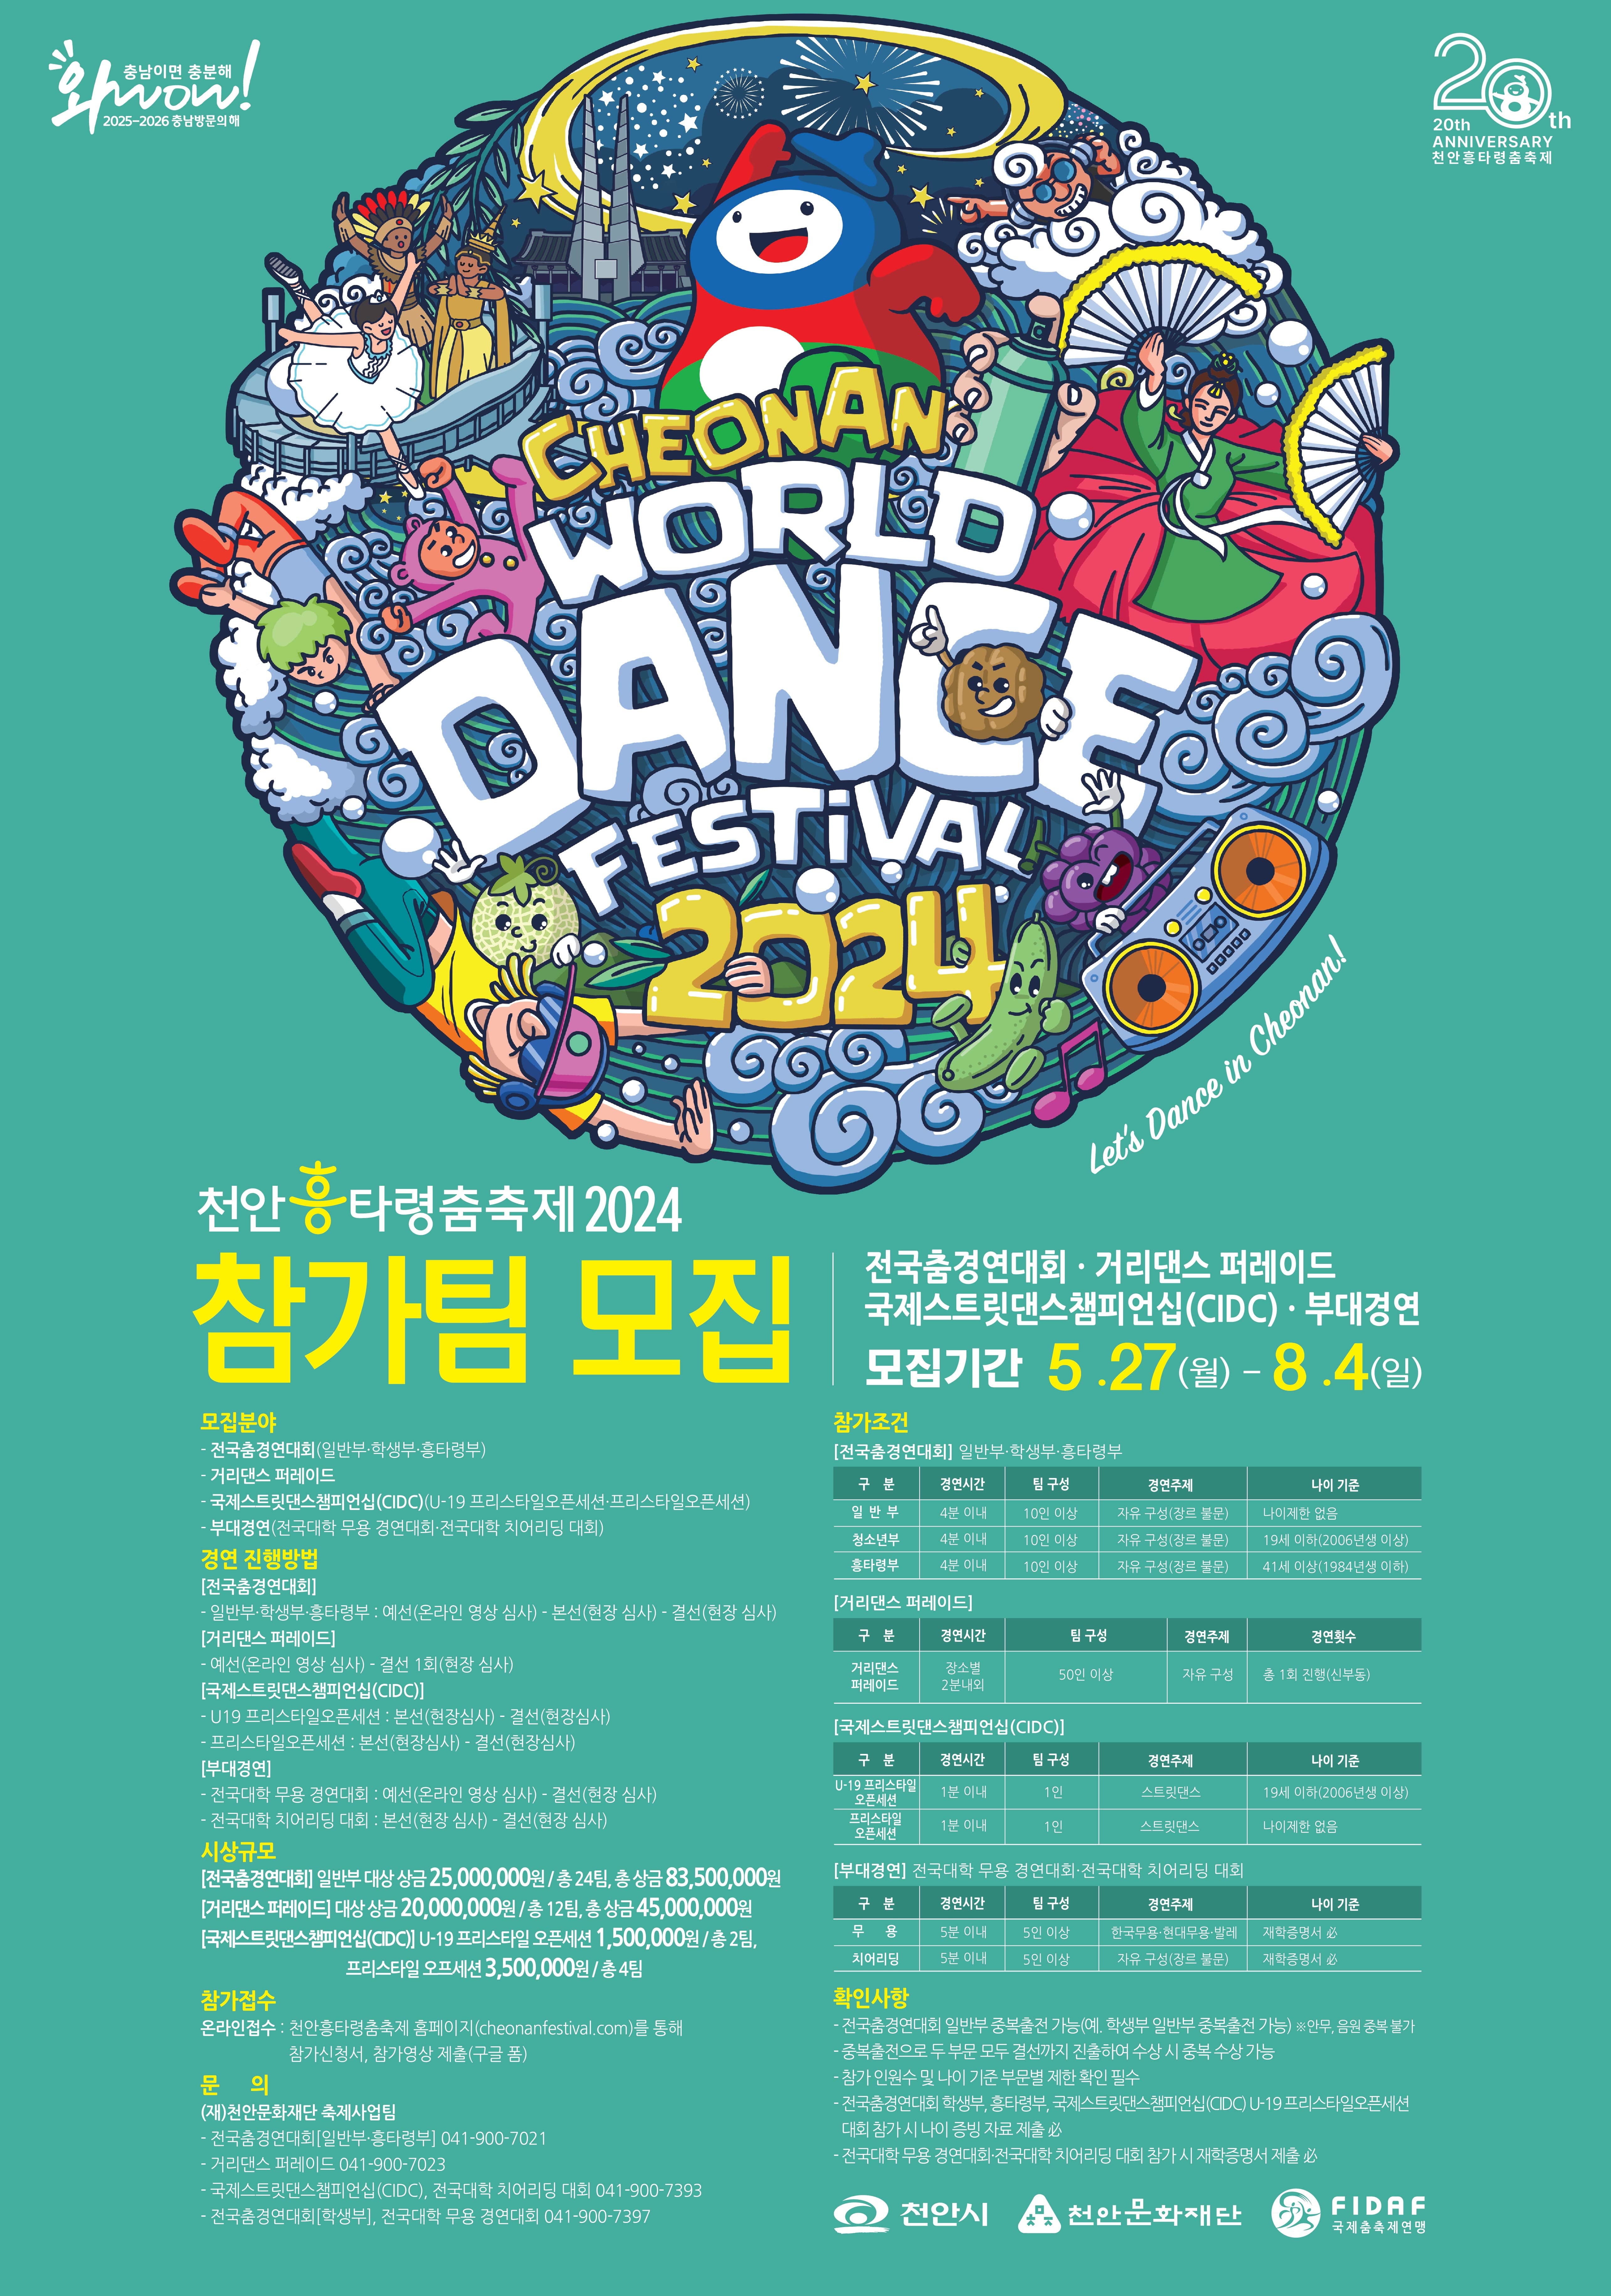 천안흥타령춤축제 2024 경연대회 참가팀 모집
~2024.08.04(일)
